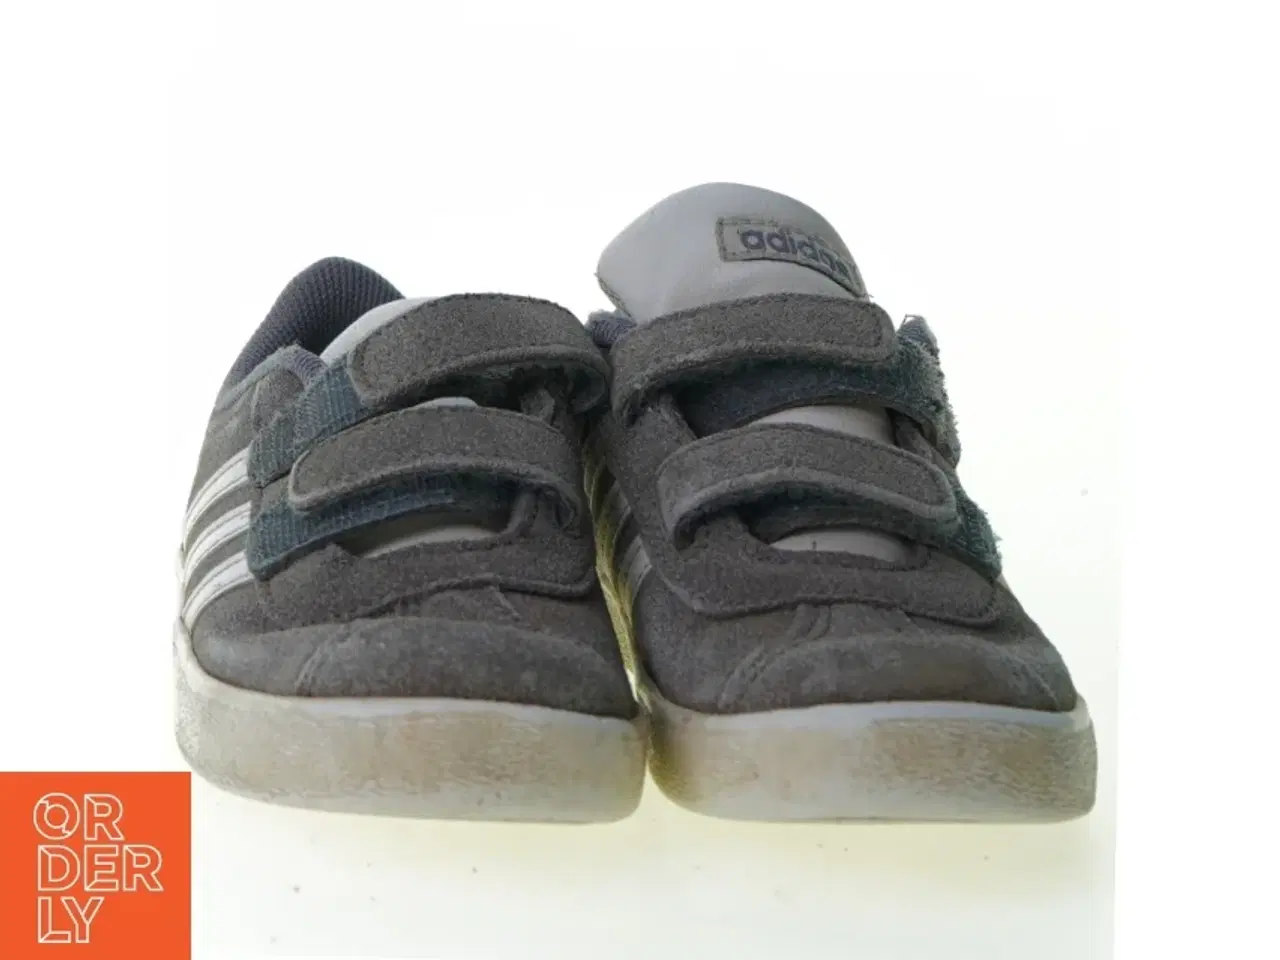 Billede 2 - Sko fra Adidas (str. 18cm)